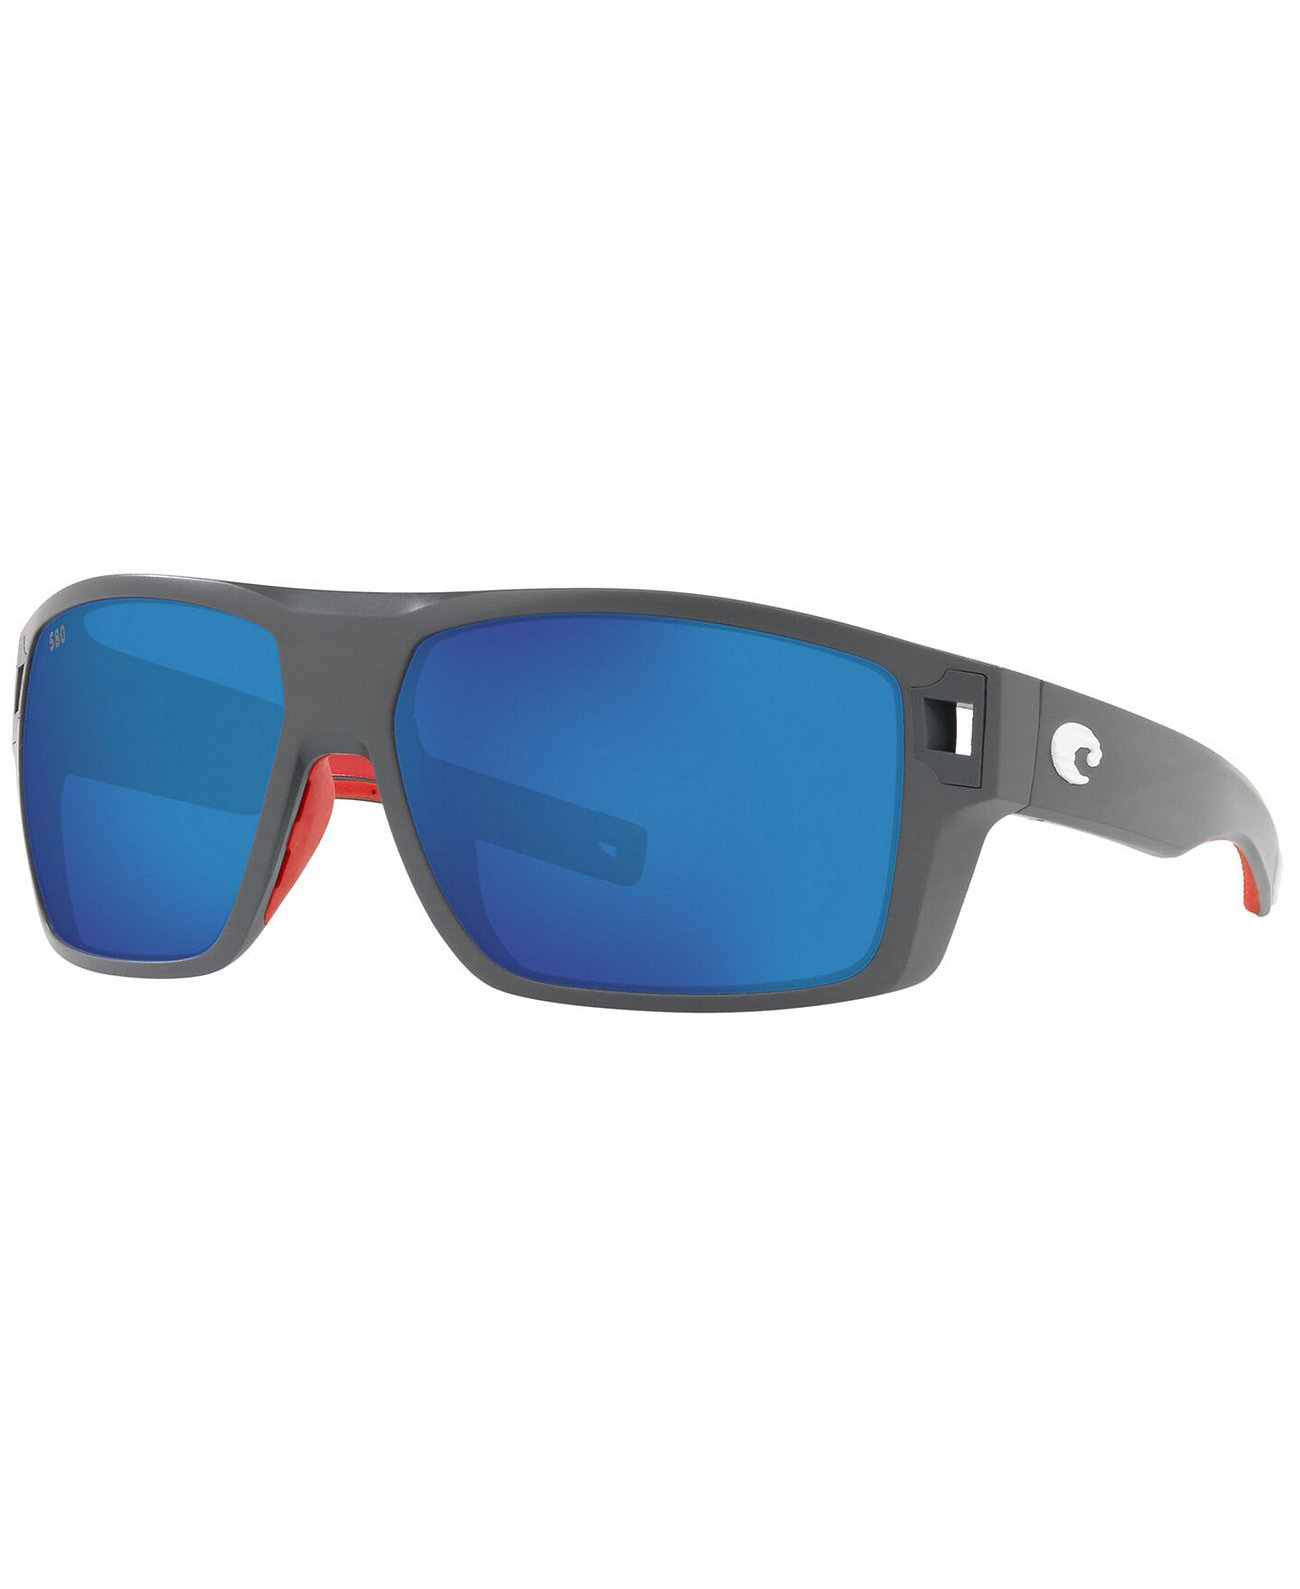 Поляризованные солнцезащитные очки Diego, 6S9034 62 COSTA DEL MAR